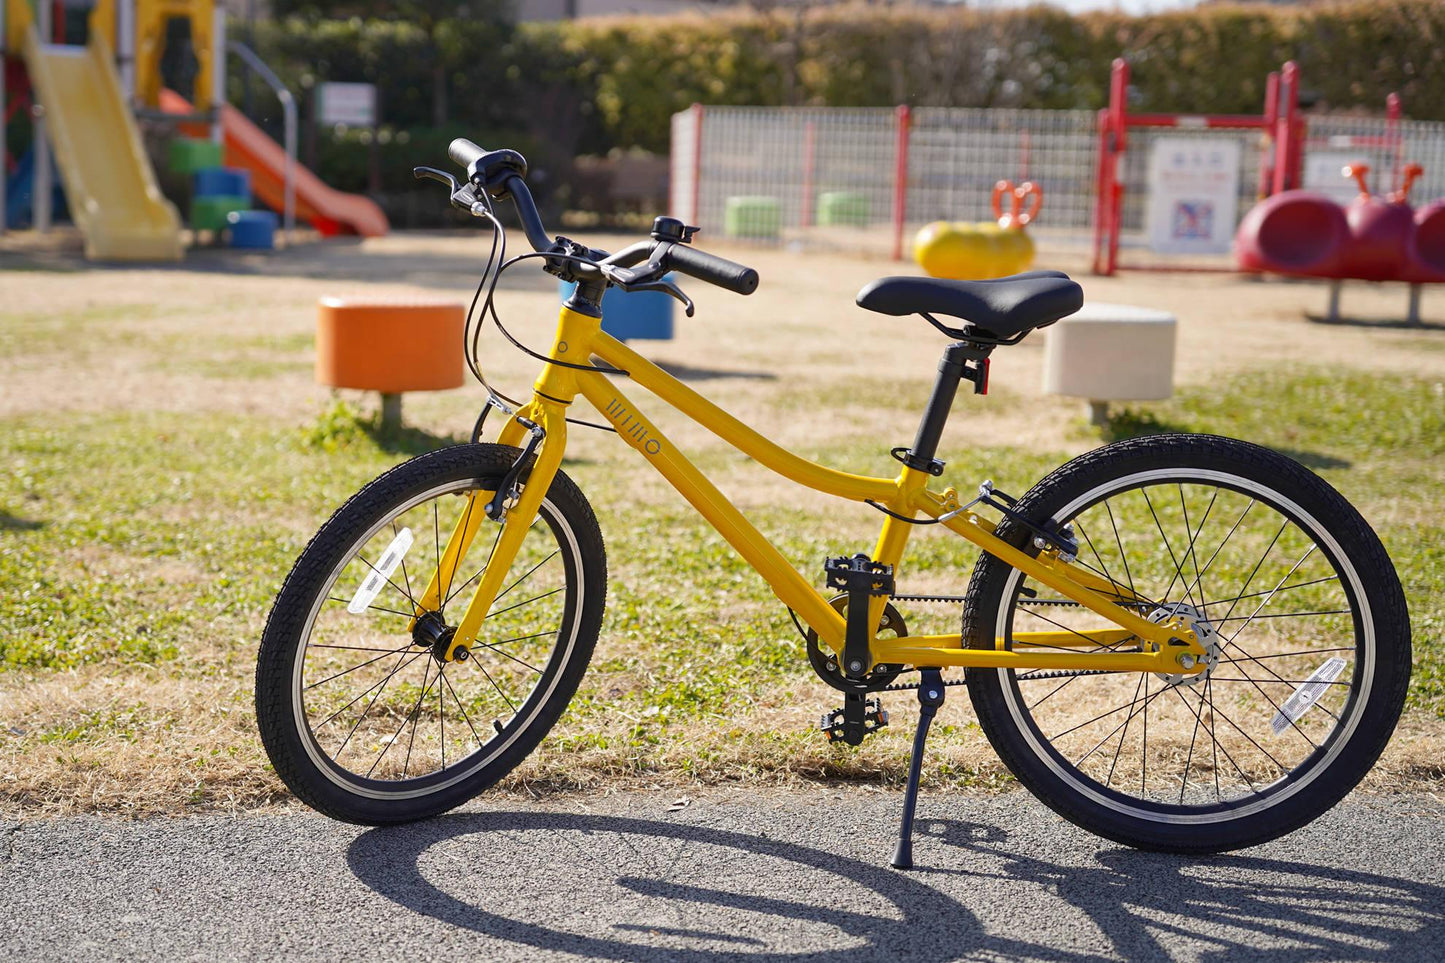 子供自転車 wimo kids 20 (Kabocha / カボチャ）| 6-9才 | 110-145cm | 8.35kg |内装3段変速 - wimo online store - オシャレ電動自転車 - 最軽量級子供自転車